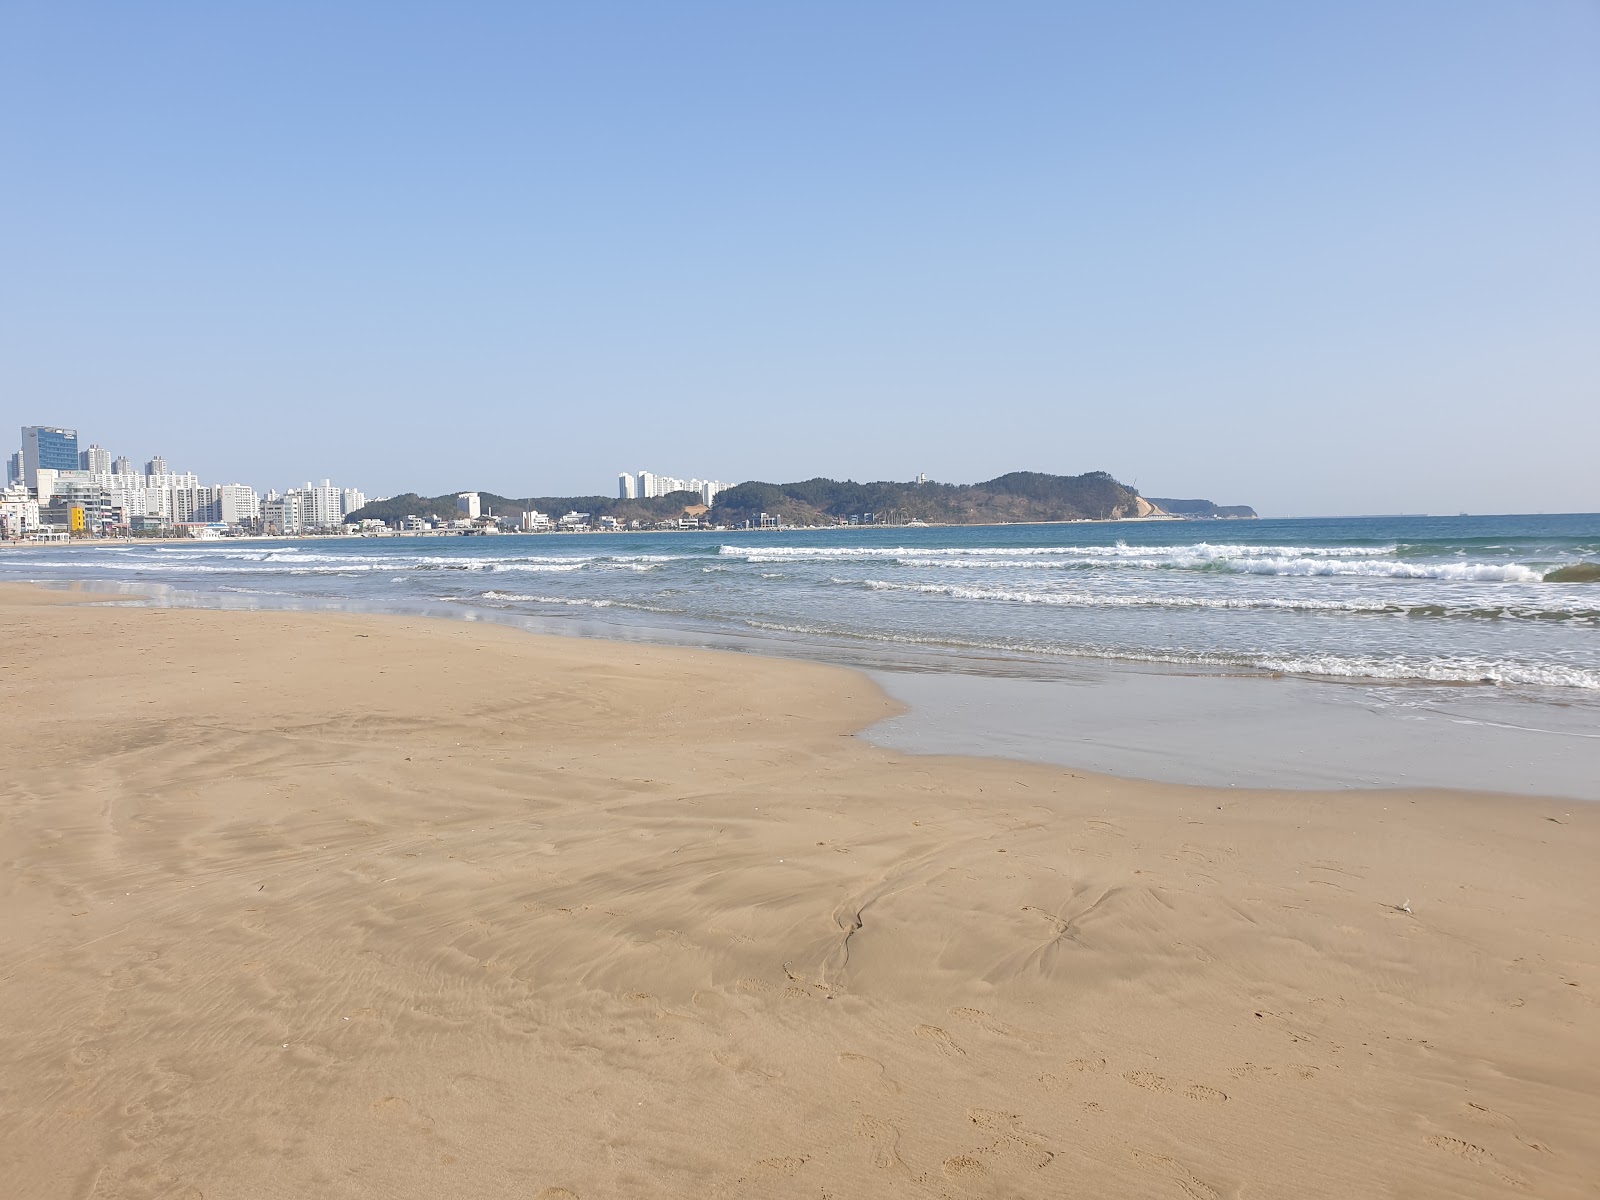 Photo de Yeongildae Beach - endroit populaire parmi les connaisseurs de la détente